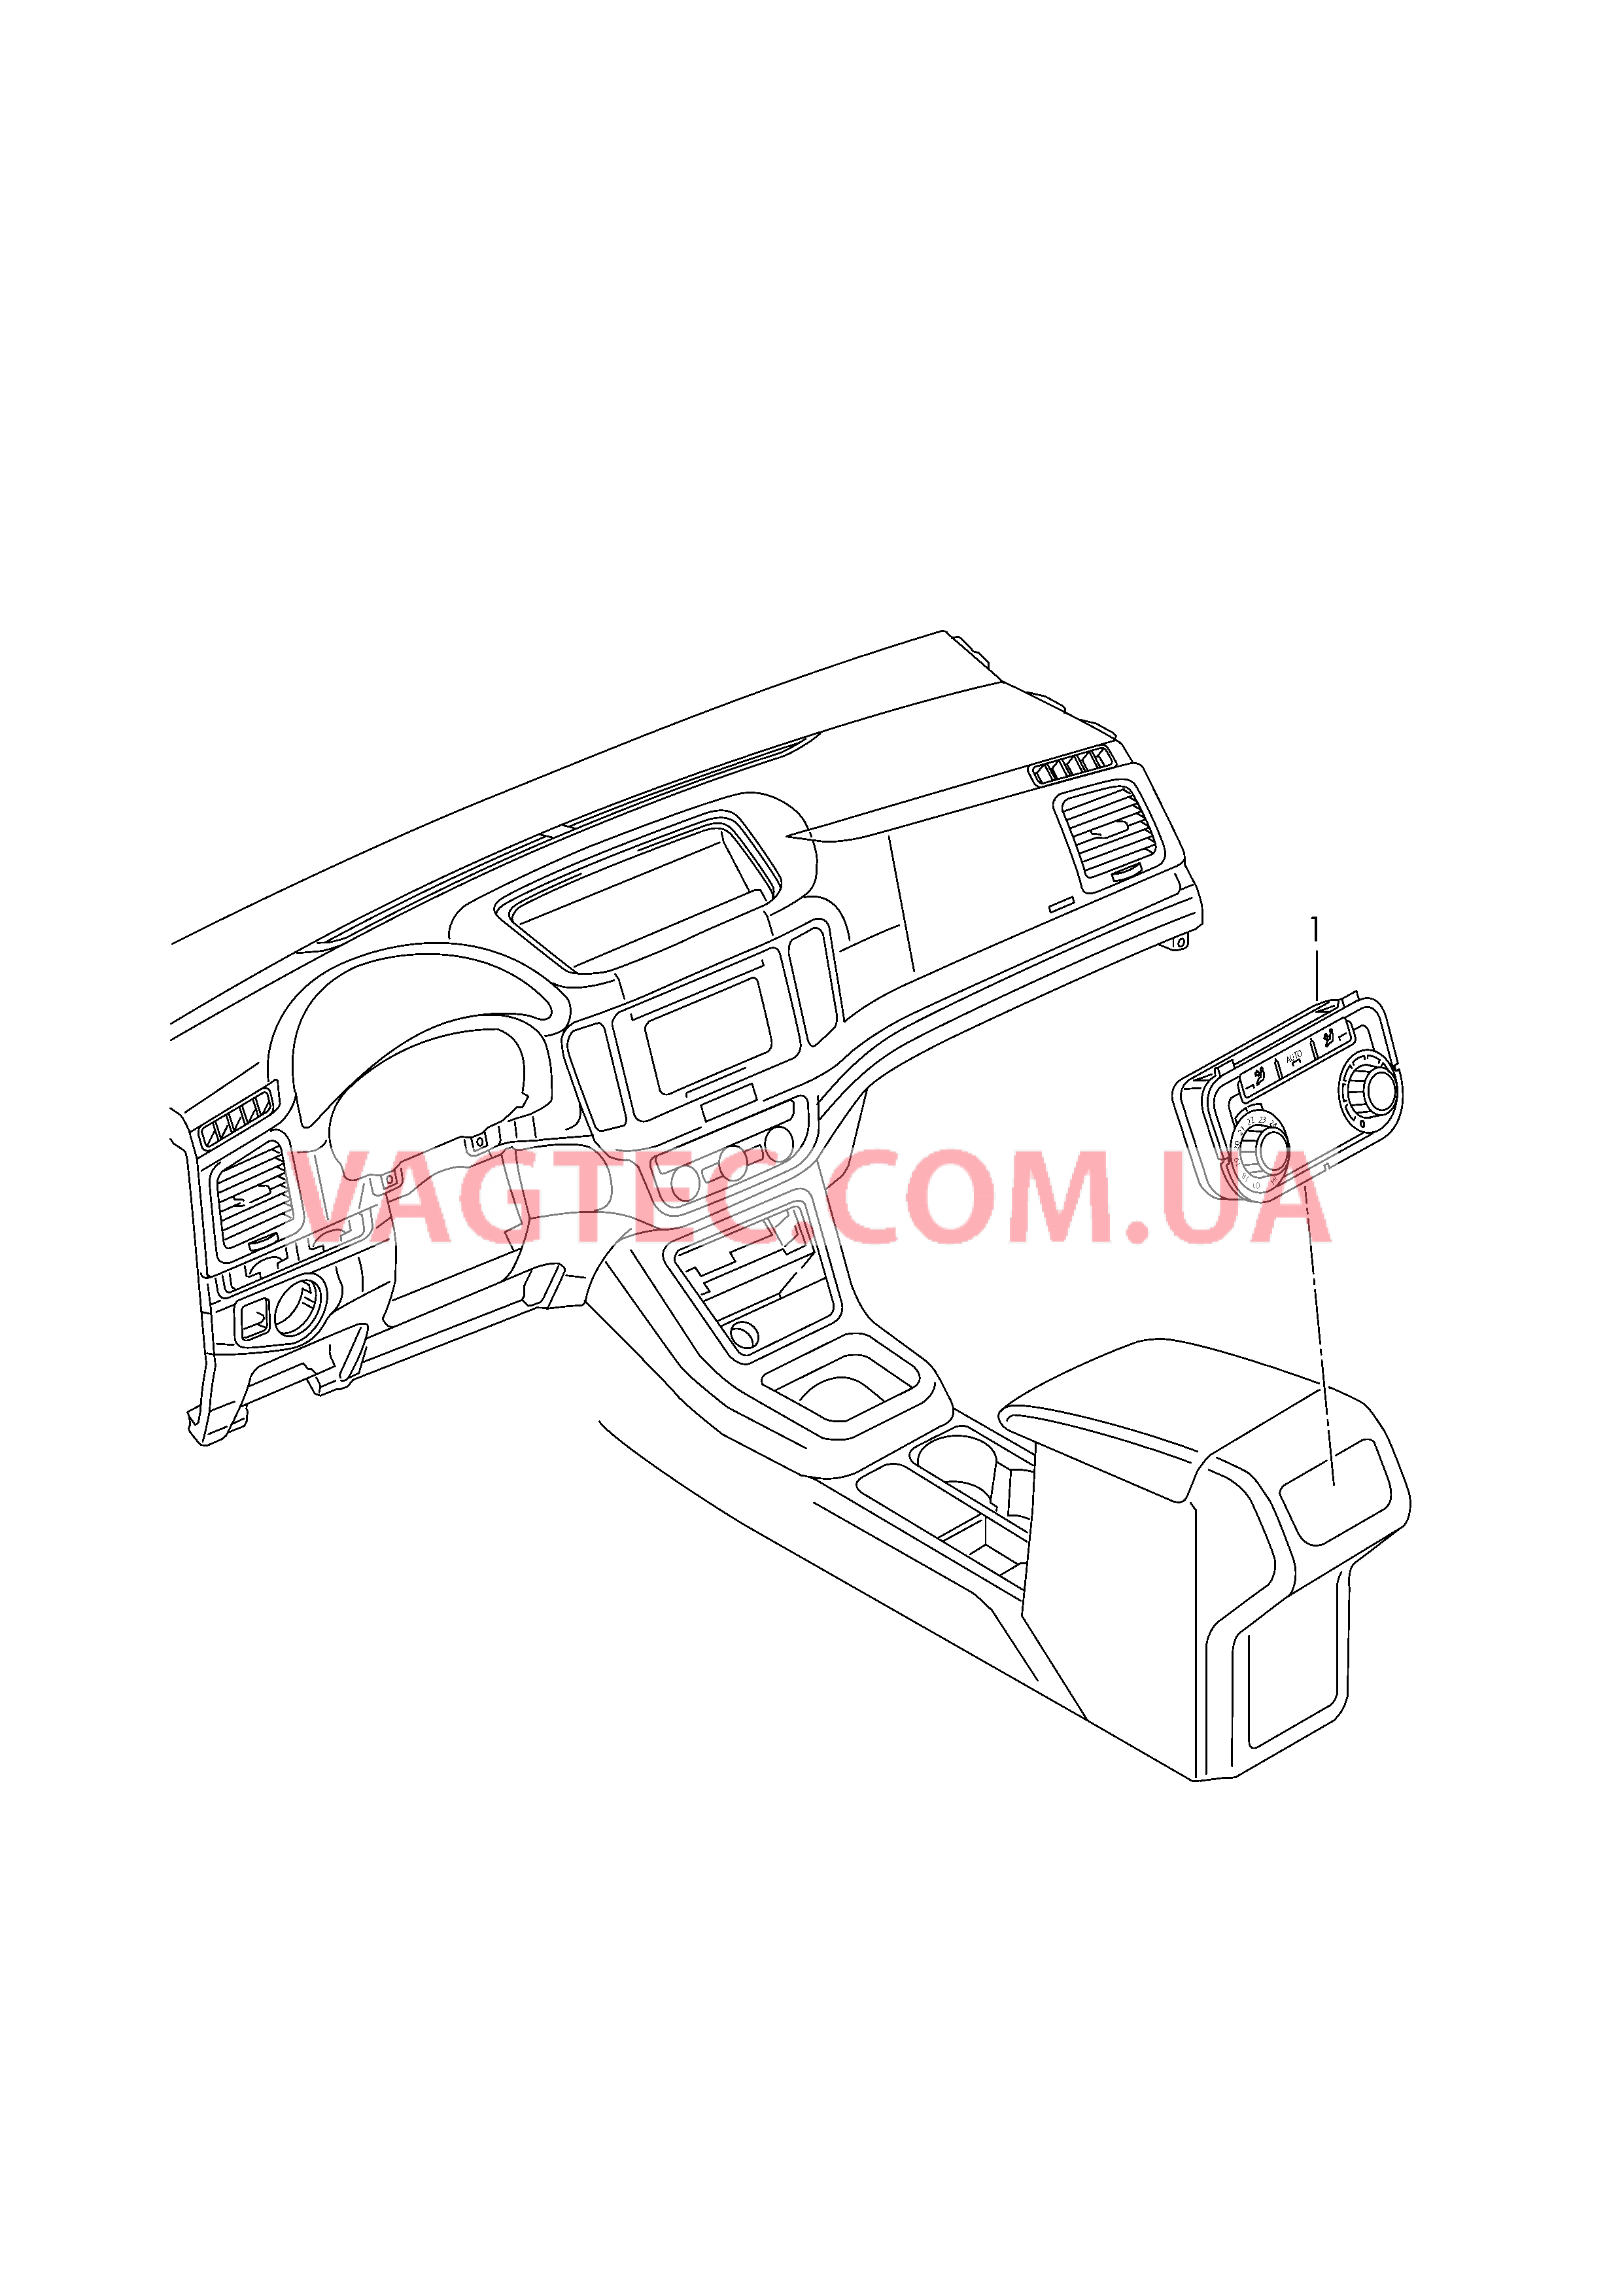 БУ климатической установки Панель управления и индикации БУ климатической установки с электронным управлением   Центральная консоль  для SEAT Alhambra 2018